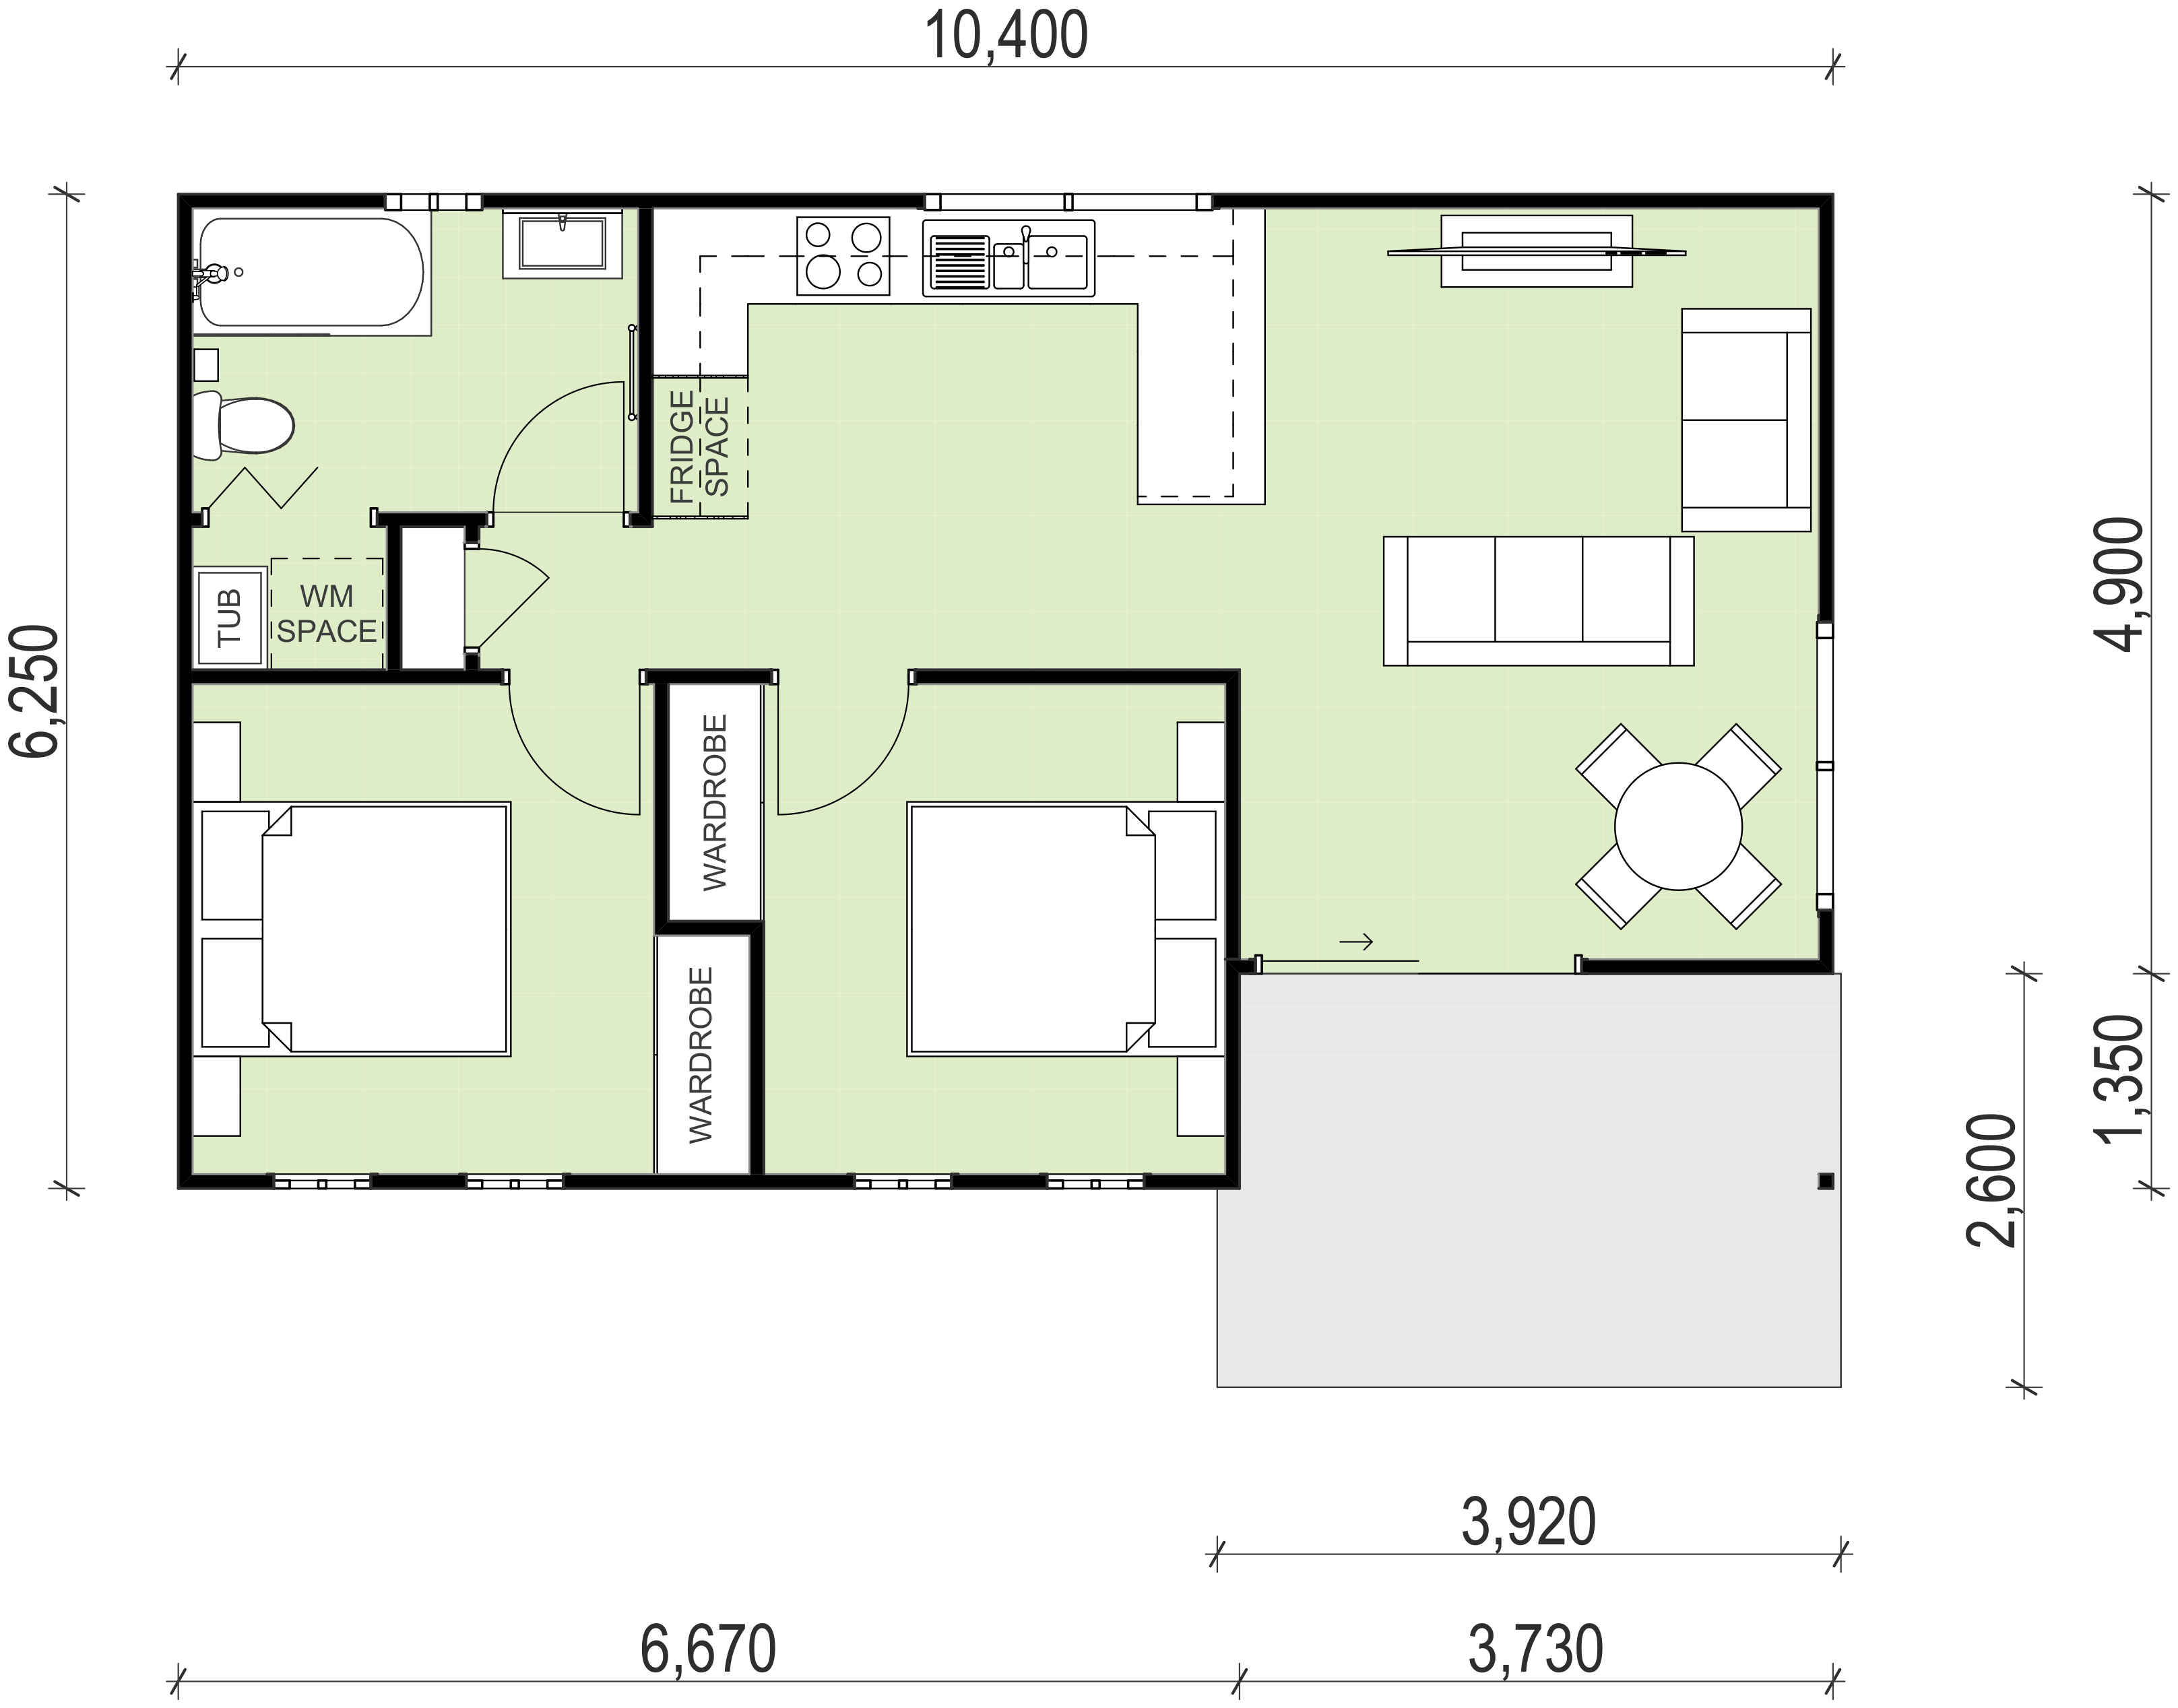 Seven Hills granny flat floor plan